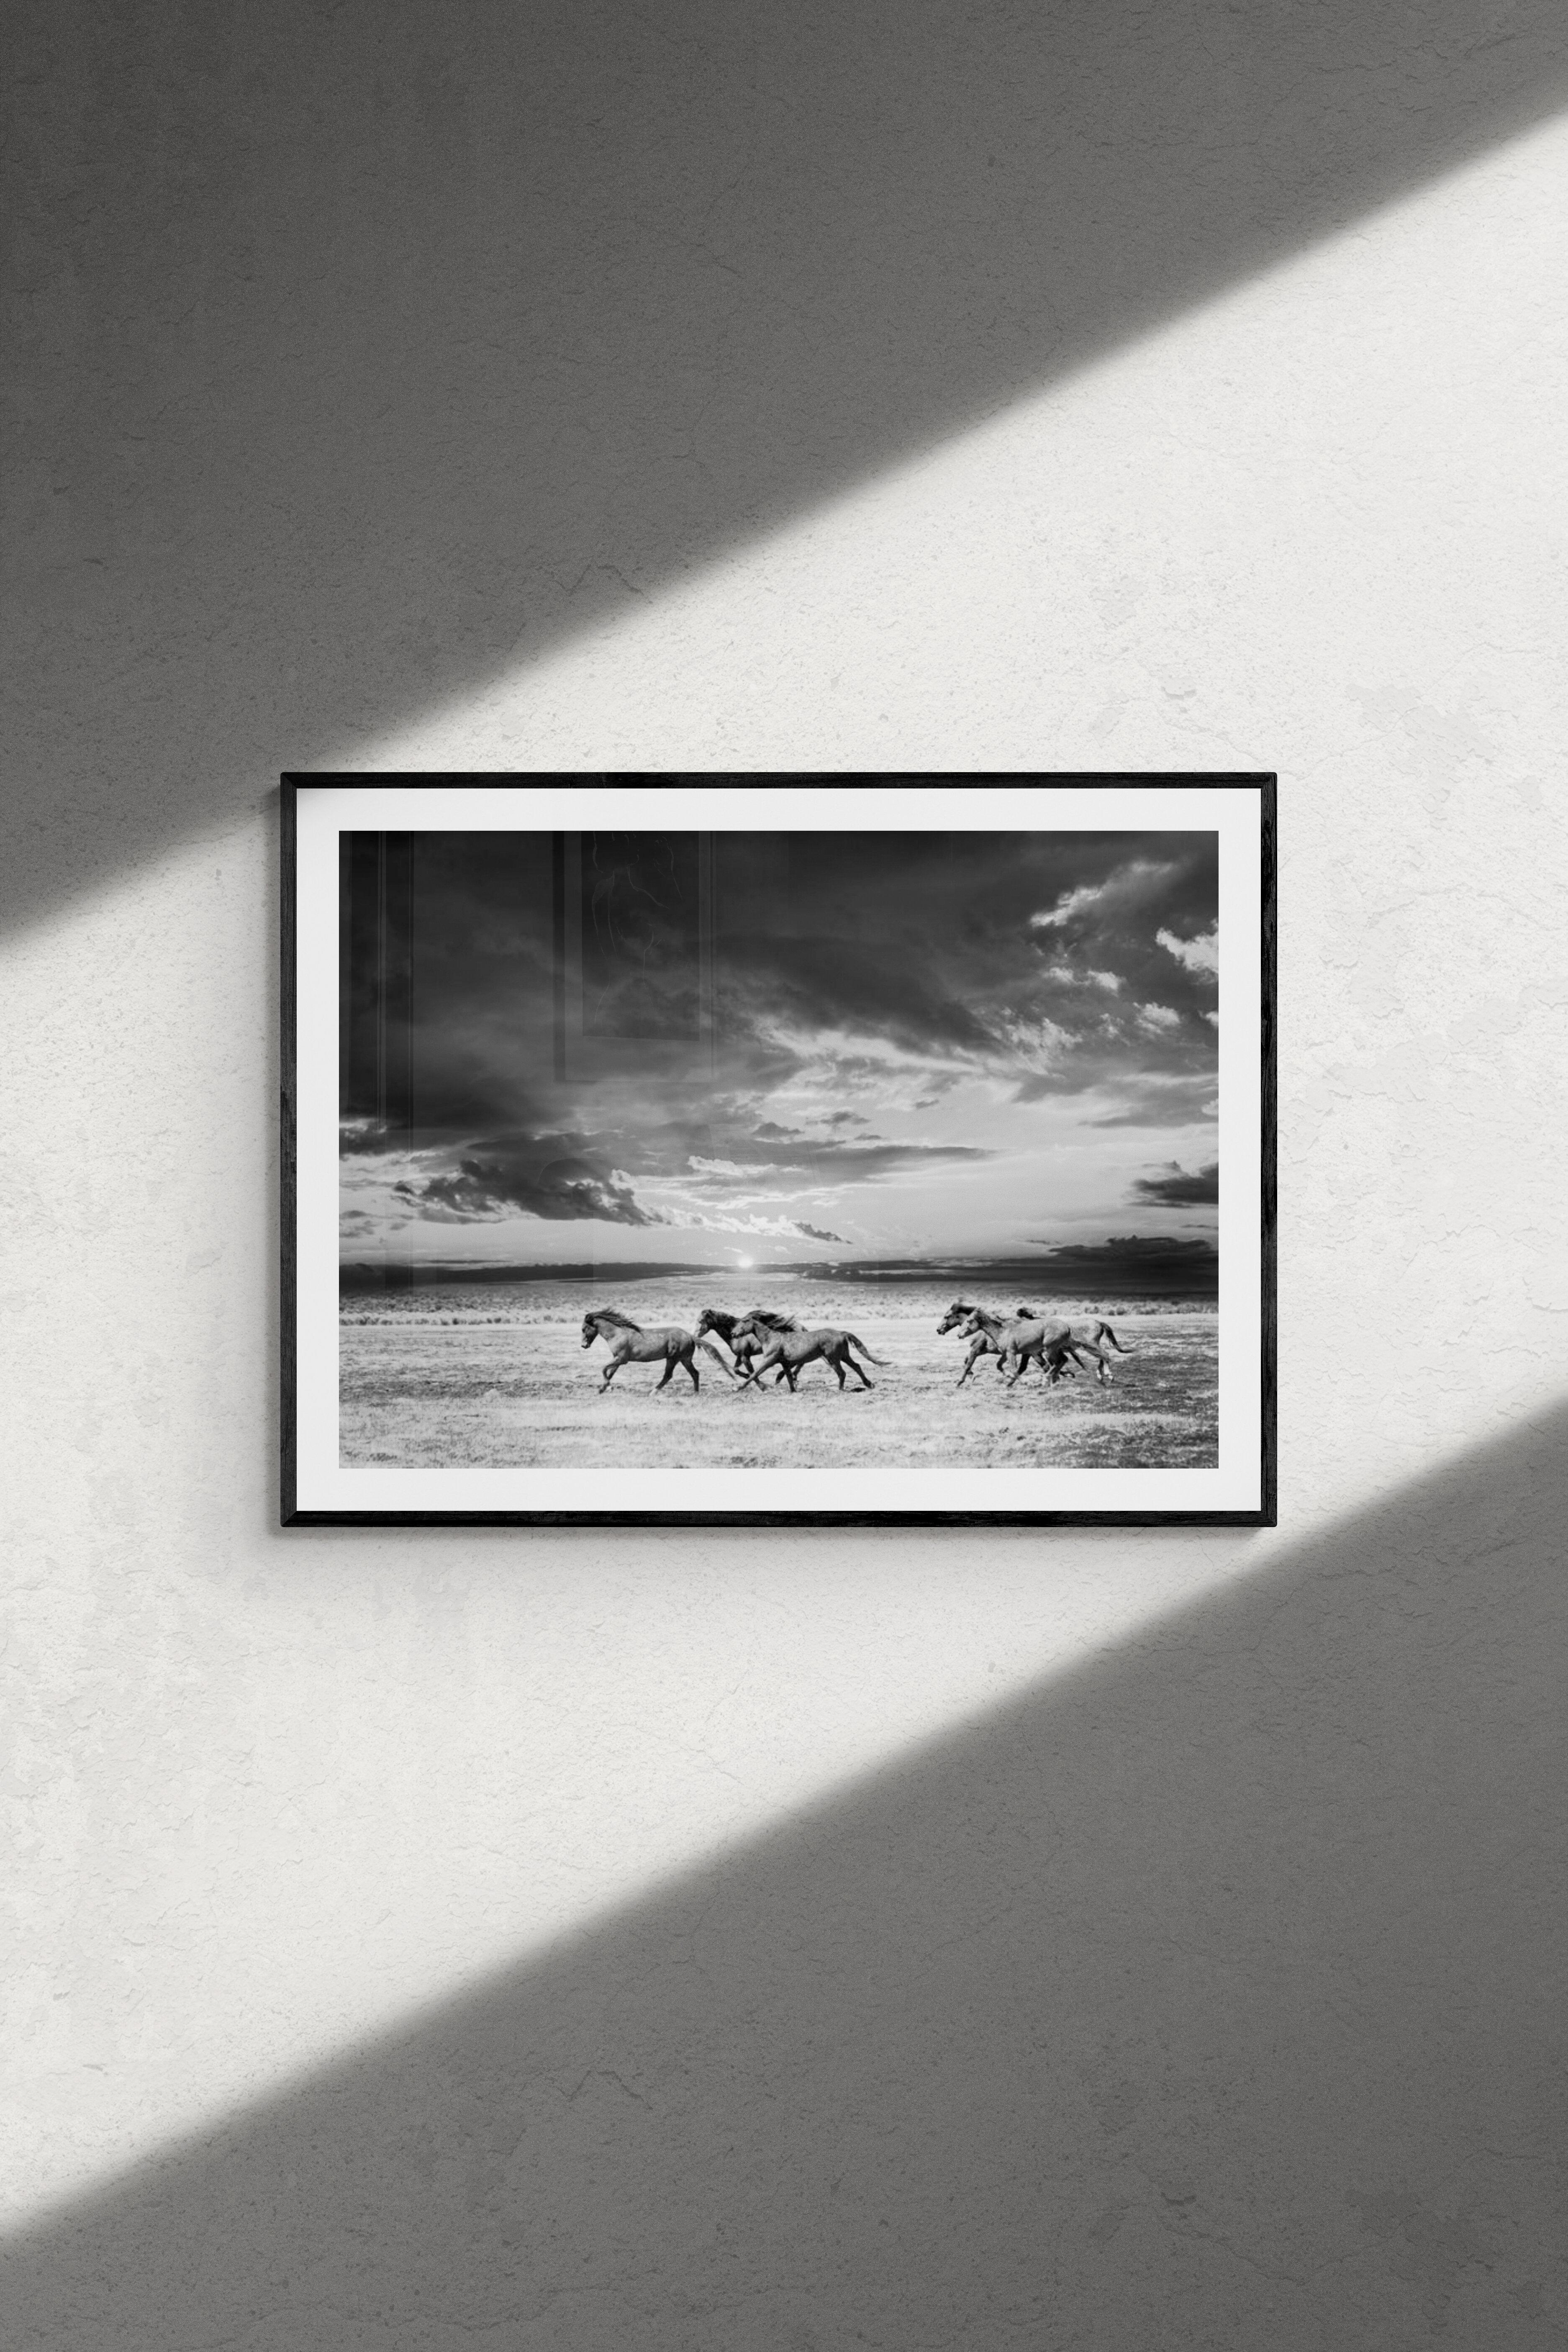 Chasing the Light – 28x40 Schwarz-Weiß-Fotografie mit Wildpferden, Senf, signiert – Photograph von Shane Russeck